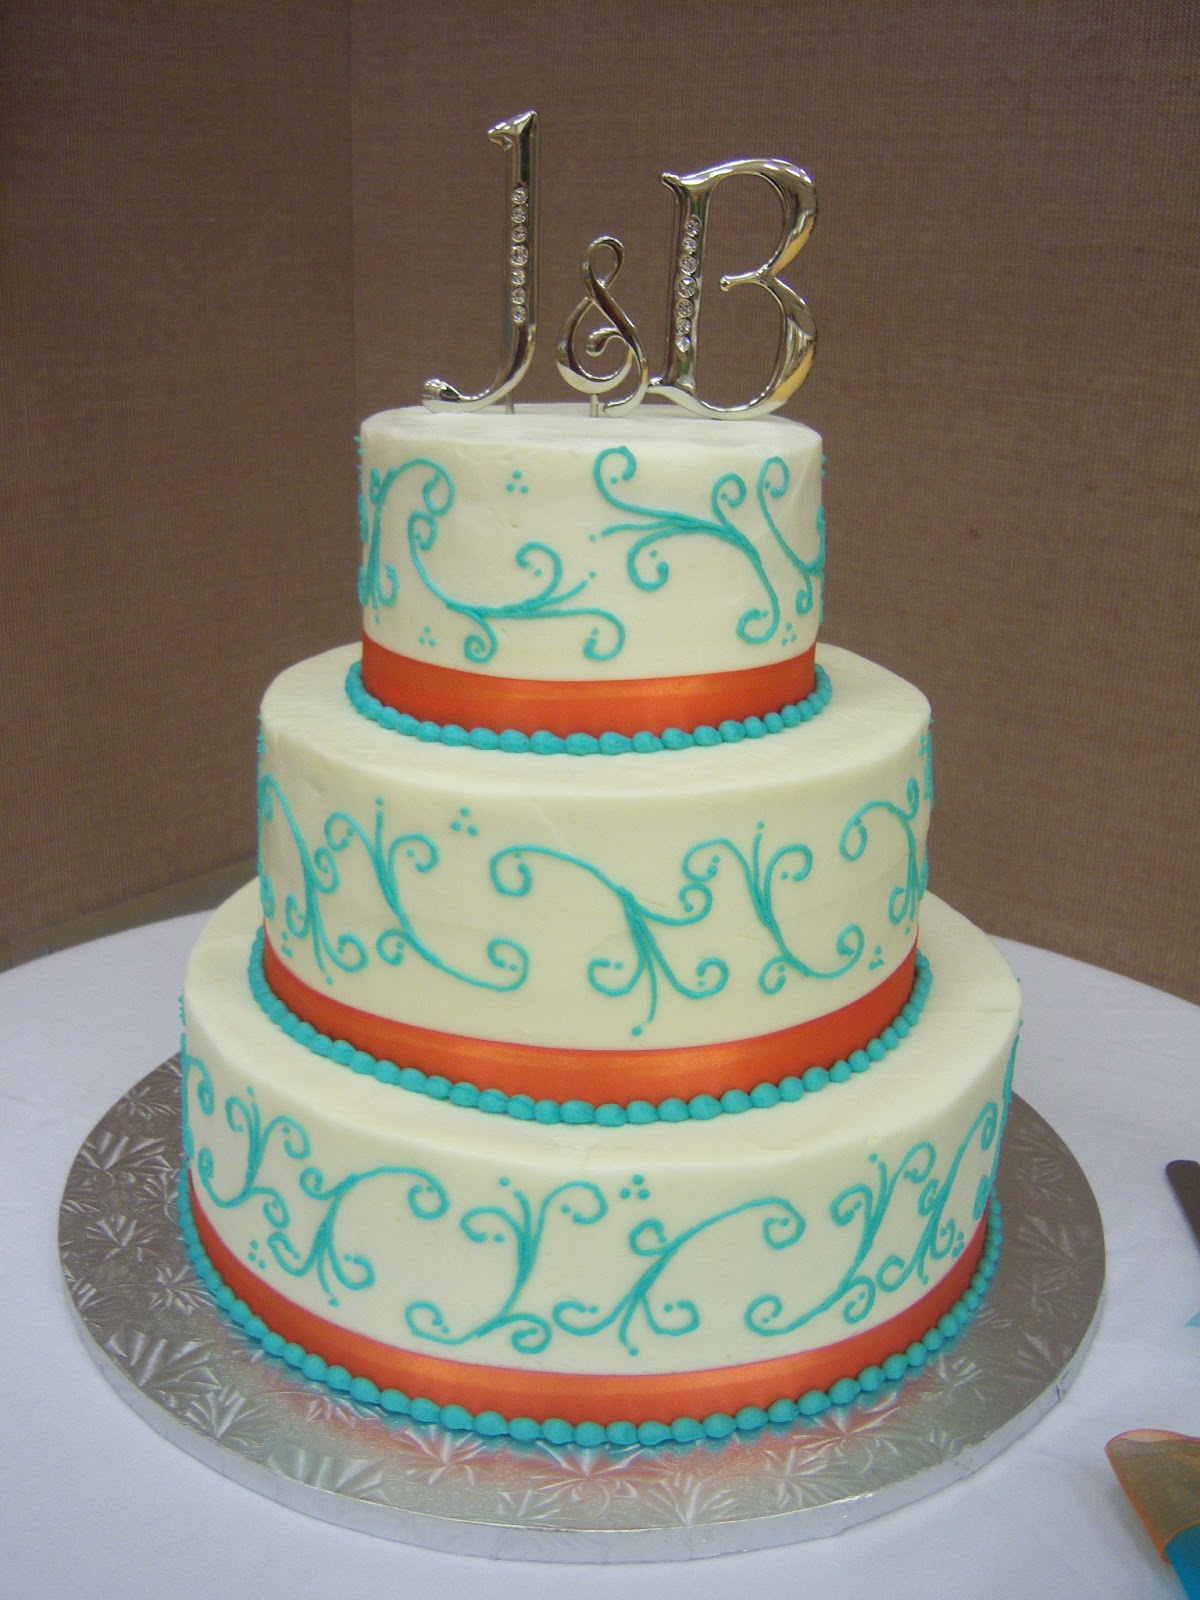 Turquoise Wedding Cake